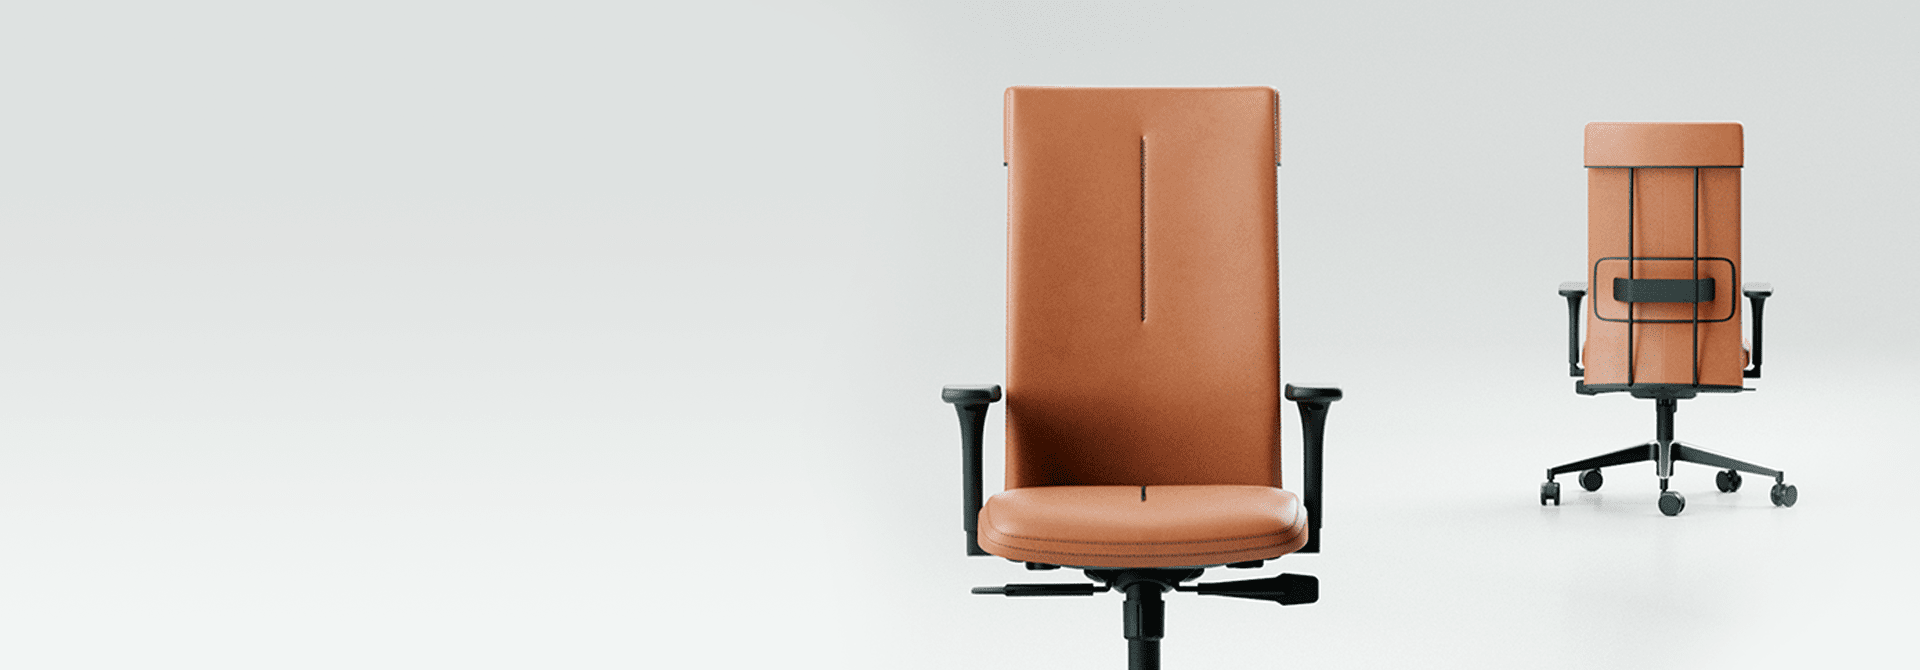 Cadeira Cavaletti Leef - Revestimentos: Elegância e Versatilidade em Tecidos Exclusivos